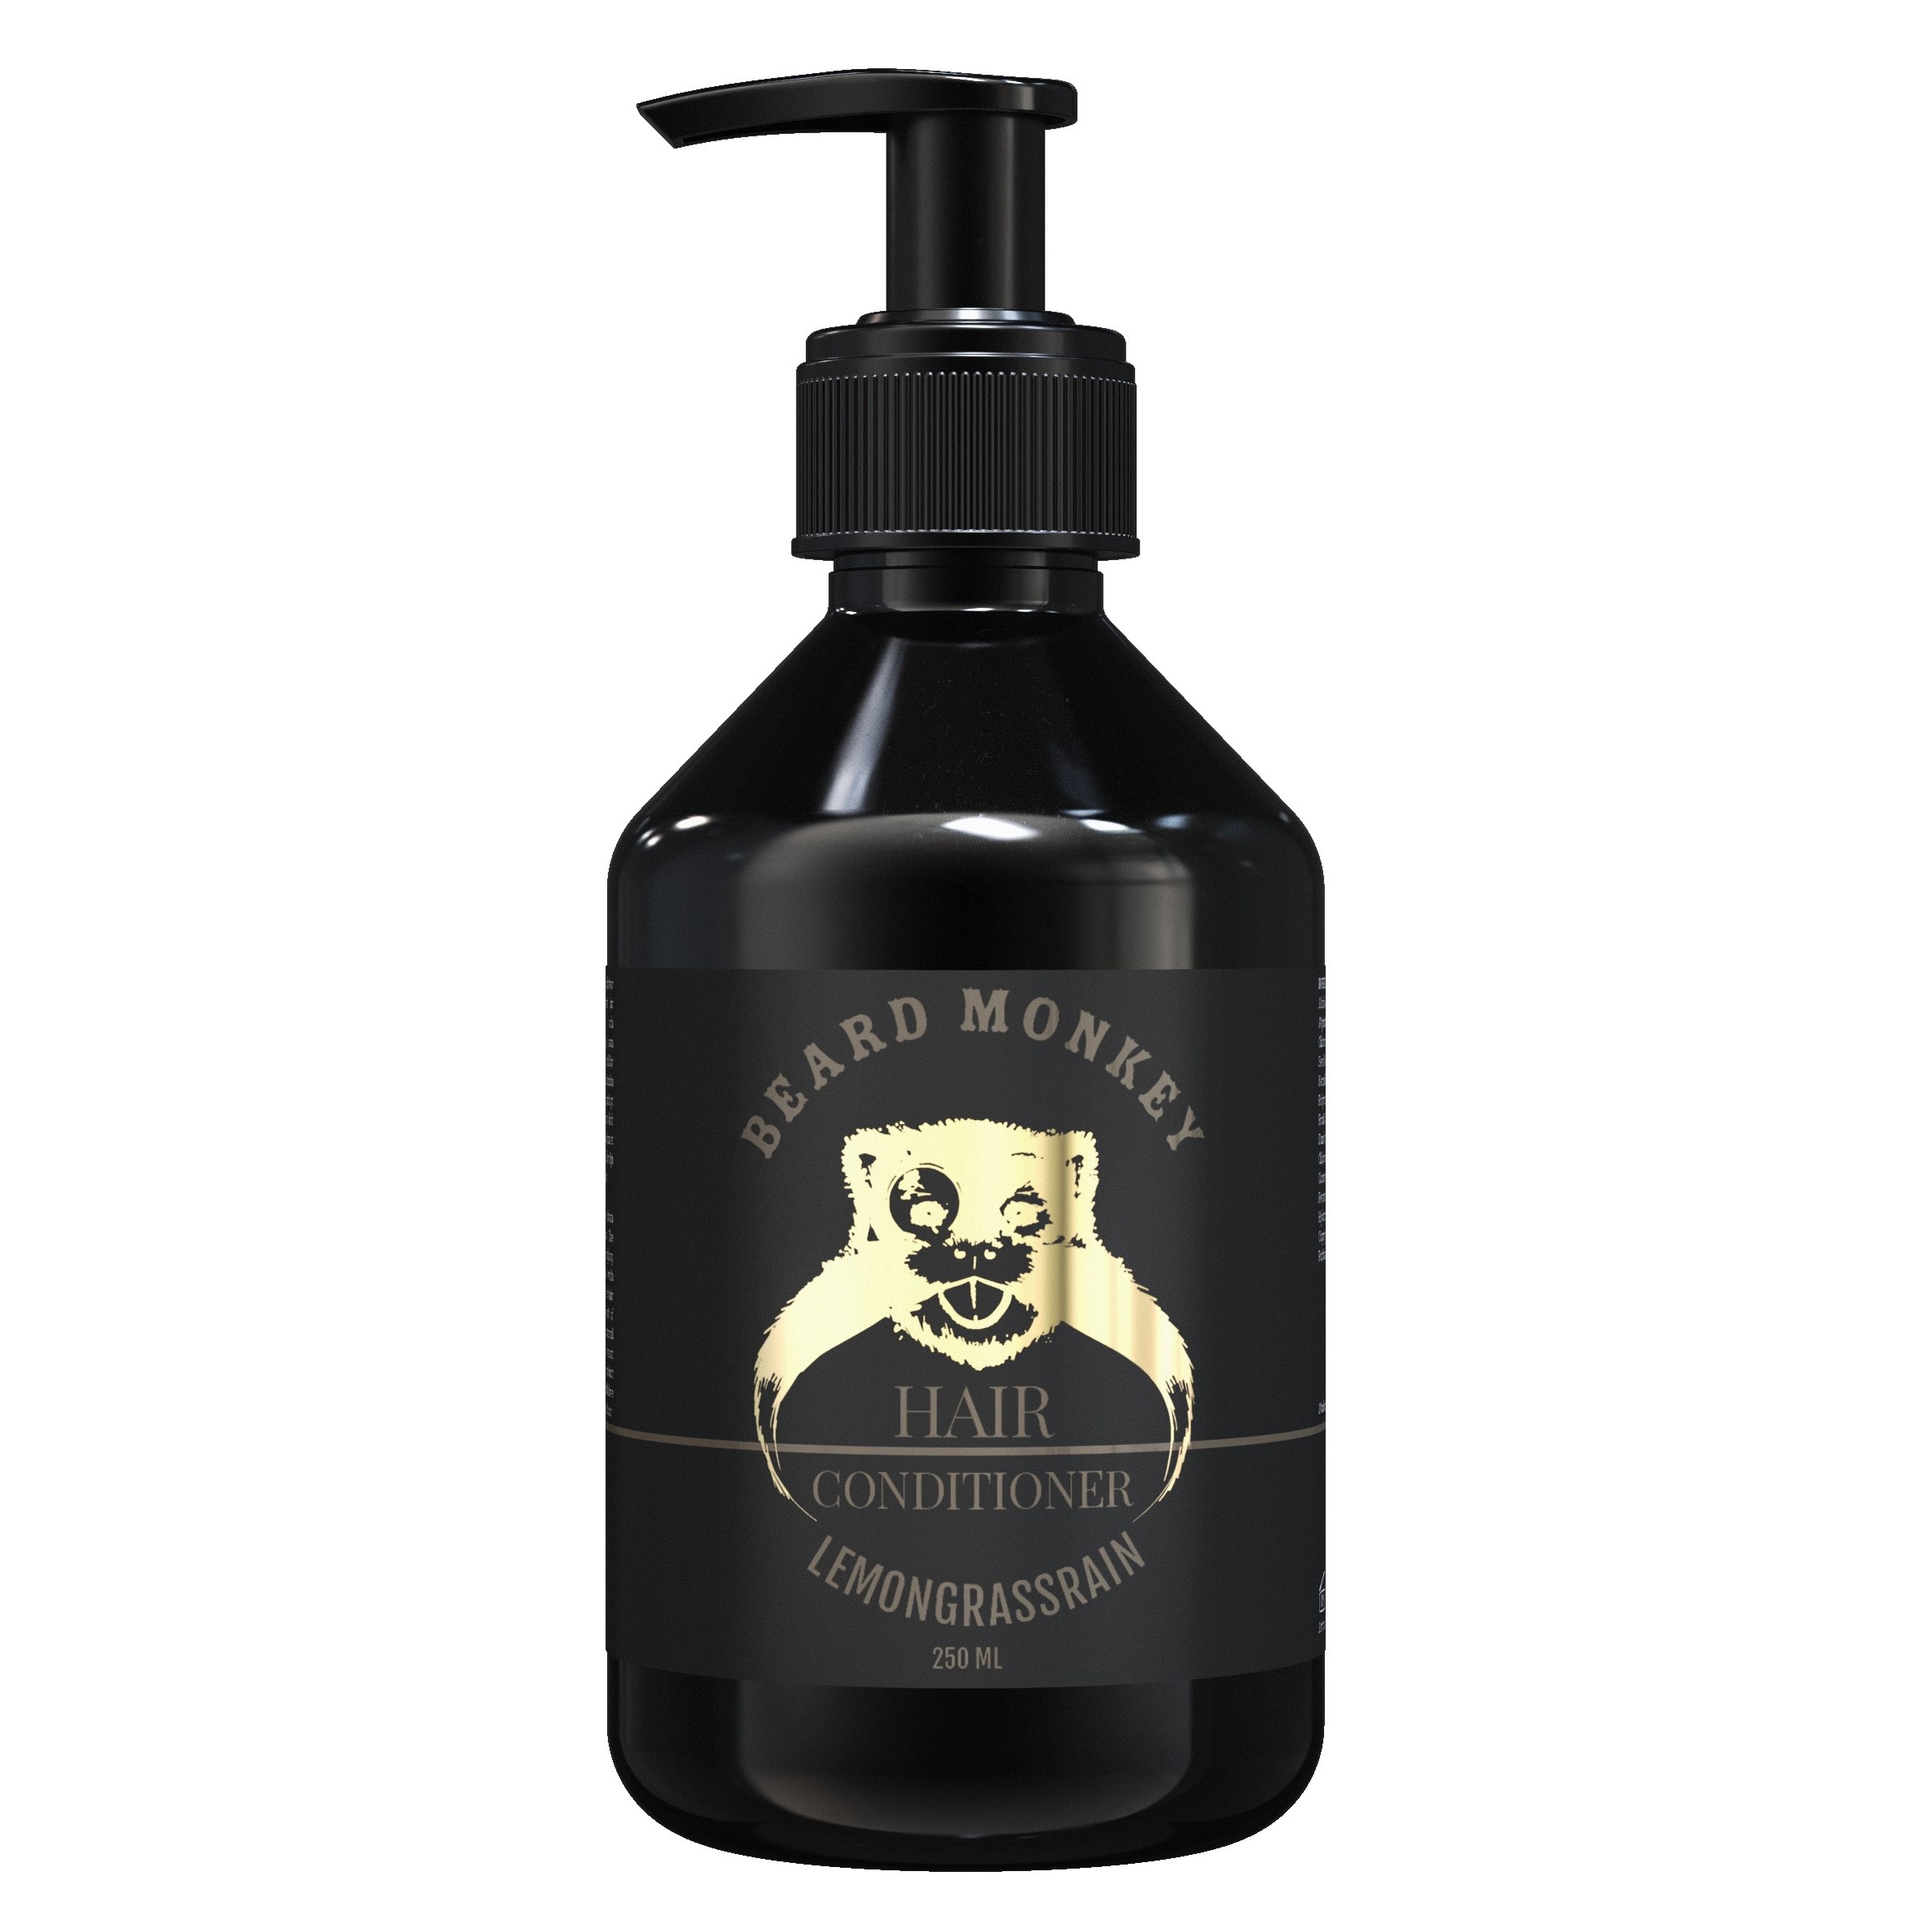 Läs mer om Beard Monkey Hair conditioner Lemongrass 250 ml